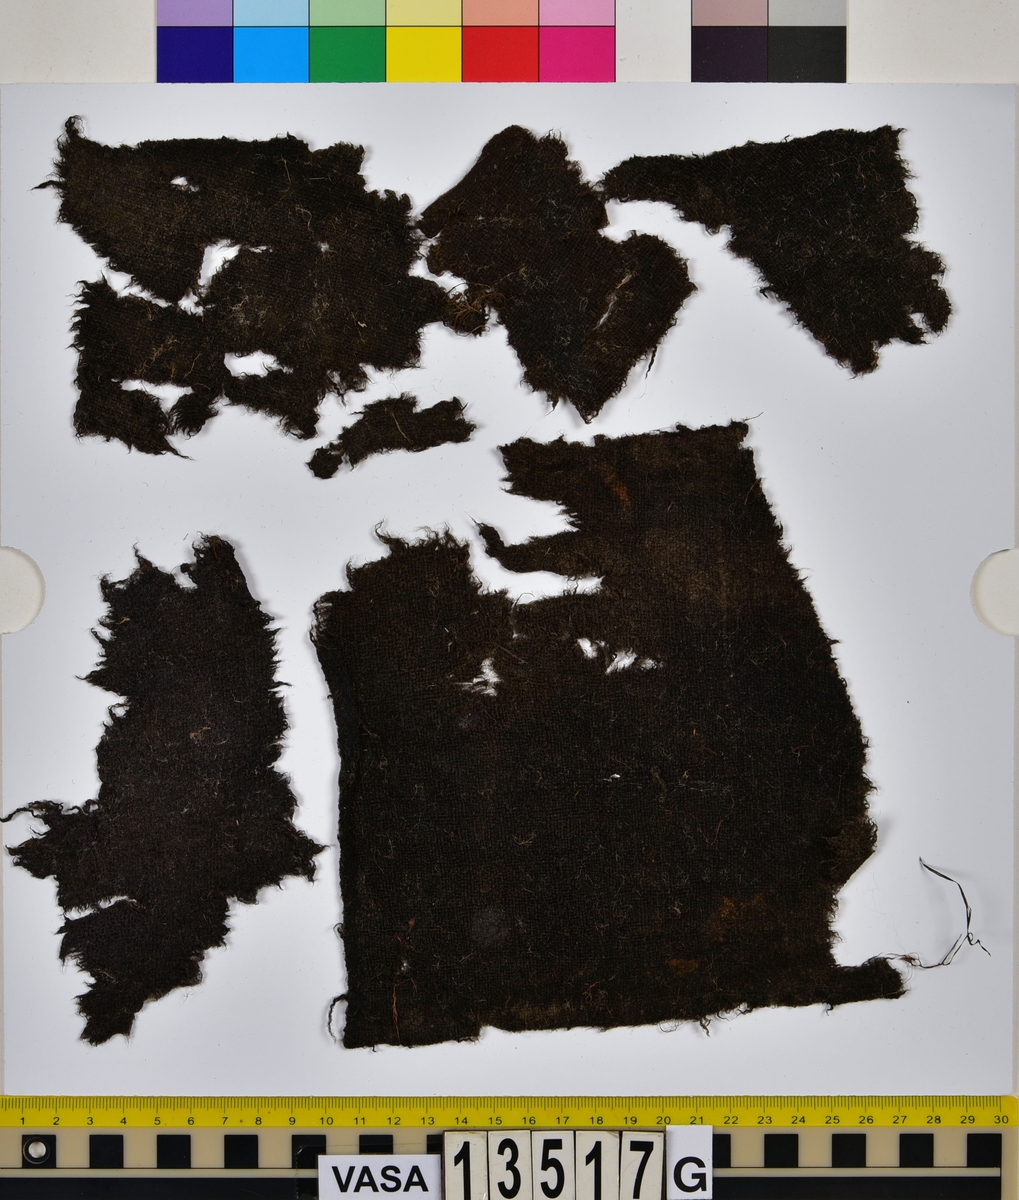 Textil.
20 textilfragment uppdelade på fyndnummer 13517a-j.
Fnr 13517a består av två fragment av ull vävda i tuskaft. Det mindre fragmentet är trekantigt, har varit valkat på insidan och har fållar med sömmar kvar. Det stora fragmentet har två bevarade originalkanter.
Fnr 13517b består av två fragment av ull vävda i 2/1-kypert.
Fnr 13517c består av två fragment av ull vävda i tuskaft. Det större fragmentet har ett hål i mitten. De är svarta av tjära och har troligen varit en del av en becksudd.
Fnr 13517d består av ett fragment av ull vävt i 2/1-kypert.
Fnr 13517e består av ett fragment av ull vävt i 2/2-kypert.
Fnr 13517f består av ett fragment av ull vävt i tuskaft.
Fnr 13517g består av 6 fragment av ull vävda i tuskaft. Två av fragmenten ser ut att ha varit valkade på ena sidan. Tre av fragmenten har vissa originalkanter eller -fållar kvar.
Fnr 13517h består av ett fragment av ull vävt i tuskaft.
Fnr 13517i består av 3 fragment av ull vävda i tuskaft. Fragmenten kan ha varit valkade på ena sidan. Ett fragment är ljusare i färgen än de andra.
Fnr 13517j består av ett filtat fragment av ull eller bäver. I en av kanterna finns hål efter en söm.






TEXTILDOKUMENTATION 2018:

Fyndnummer: 13517c
Kontextgrupp: HS5
Typnummer: HS5.1:1 (till höger i bild)

Fragment i tuskaftsvävd ull och ruggad/valkad med en mycket tät lugg. Fragmentet är rektangulärt, har uppfransade kanter och ett spikhål i mitten (3-4 mm). I mitten på ena sidan finns ett vagt fyrkantigt avtryck (28 x 25 mm) och på andra sidan ett ovalt avtryck (35x47 mm). Dessa avtryck är troligtvis efter en fyrkantig läderbit och ett runt skaft vilket talar för att detta fragment har tillhört en becksudd. Tyget har veckats och brustit mot avtrycket. Fragmentet har synliga rester av tjära/beck samt bastfiber som ligger ovanpå. Fragmentet är relativt mjukt.

TEKNIK
Trådsystem 1
Trådtäthet (tr/cm): 8
Garn nr: 1
Fibermaterial: ull
Garngrovlek (mm): 0,77-1,01 
Antal trådar: 1
Spinnriktning: Z
Spinnvinkel (grader): 15,79-29,62 
Färg: mörkbrun originalfärg okänd

Trådsystem 2
Trådtäthet (tr/cm): 8
Garn nr: 2
Fibermaterial: ull
Garngrovlek (mm): 0,67-0,87 
Antal trådar: 1
Spinnriktning: S
Spinnvinkel (grader): 14,19-30,56 
Färg: mörkbrun originalfärg okänd




Fyndnummer: 13517c
Kontextgrupp: HS5
Typnummer: HS5.2:1 (till vänster i bild)

Fragment i ull, vävt i 2/2 kypert och tuskaft (4 skaft). Fragmentet har vridit och vikt sig så att de z-spunna respektive de s-spunna trådarna ser ut att tillhöra olika trådsystem. Detta är på grund av vridningen och i själva verket är det en fram- och en baksida man ser. Stora mängder långa bastfibrer sitter invirade i fragmentet, liksom en sten. På fragmentet finns även rester av vad som kan vara tjära eller beck.
I mikroskop har fibrerna en jämn, tydlig och intensiv svart färg. Att fibrerna är så pass jämna i färgen kan tyda på att de är färgade.

TEKNIK
Trådsystem 1
Trådtäthet (tr/cm): 9-10
Garn nr: 1
Fibermaterial: ull
Garngrovlek (mm): 0,61-1,01 
Antal trådar: 1
Spinnriktning: Z
Spinnvinkel (grader): 34,25-40,51 
Färg: svart

Trådsystem 2
Trådtäthet (tr/cm): 9-10
Garn nr: 2
Fibermaterial: ull
Garngrovlek (mm): 0,69-1,06
Antal trådar: 1
Spinnriktning: S
Spinnvinkel (grader): 21,78-28,09
Färg: svart